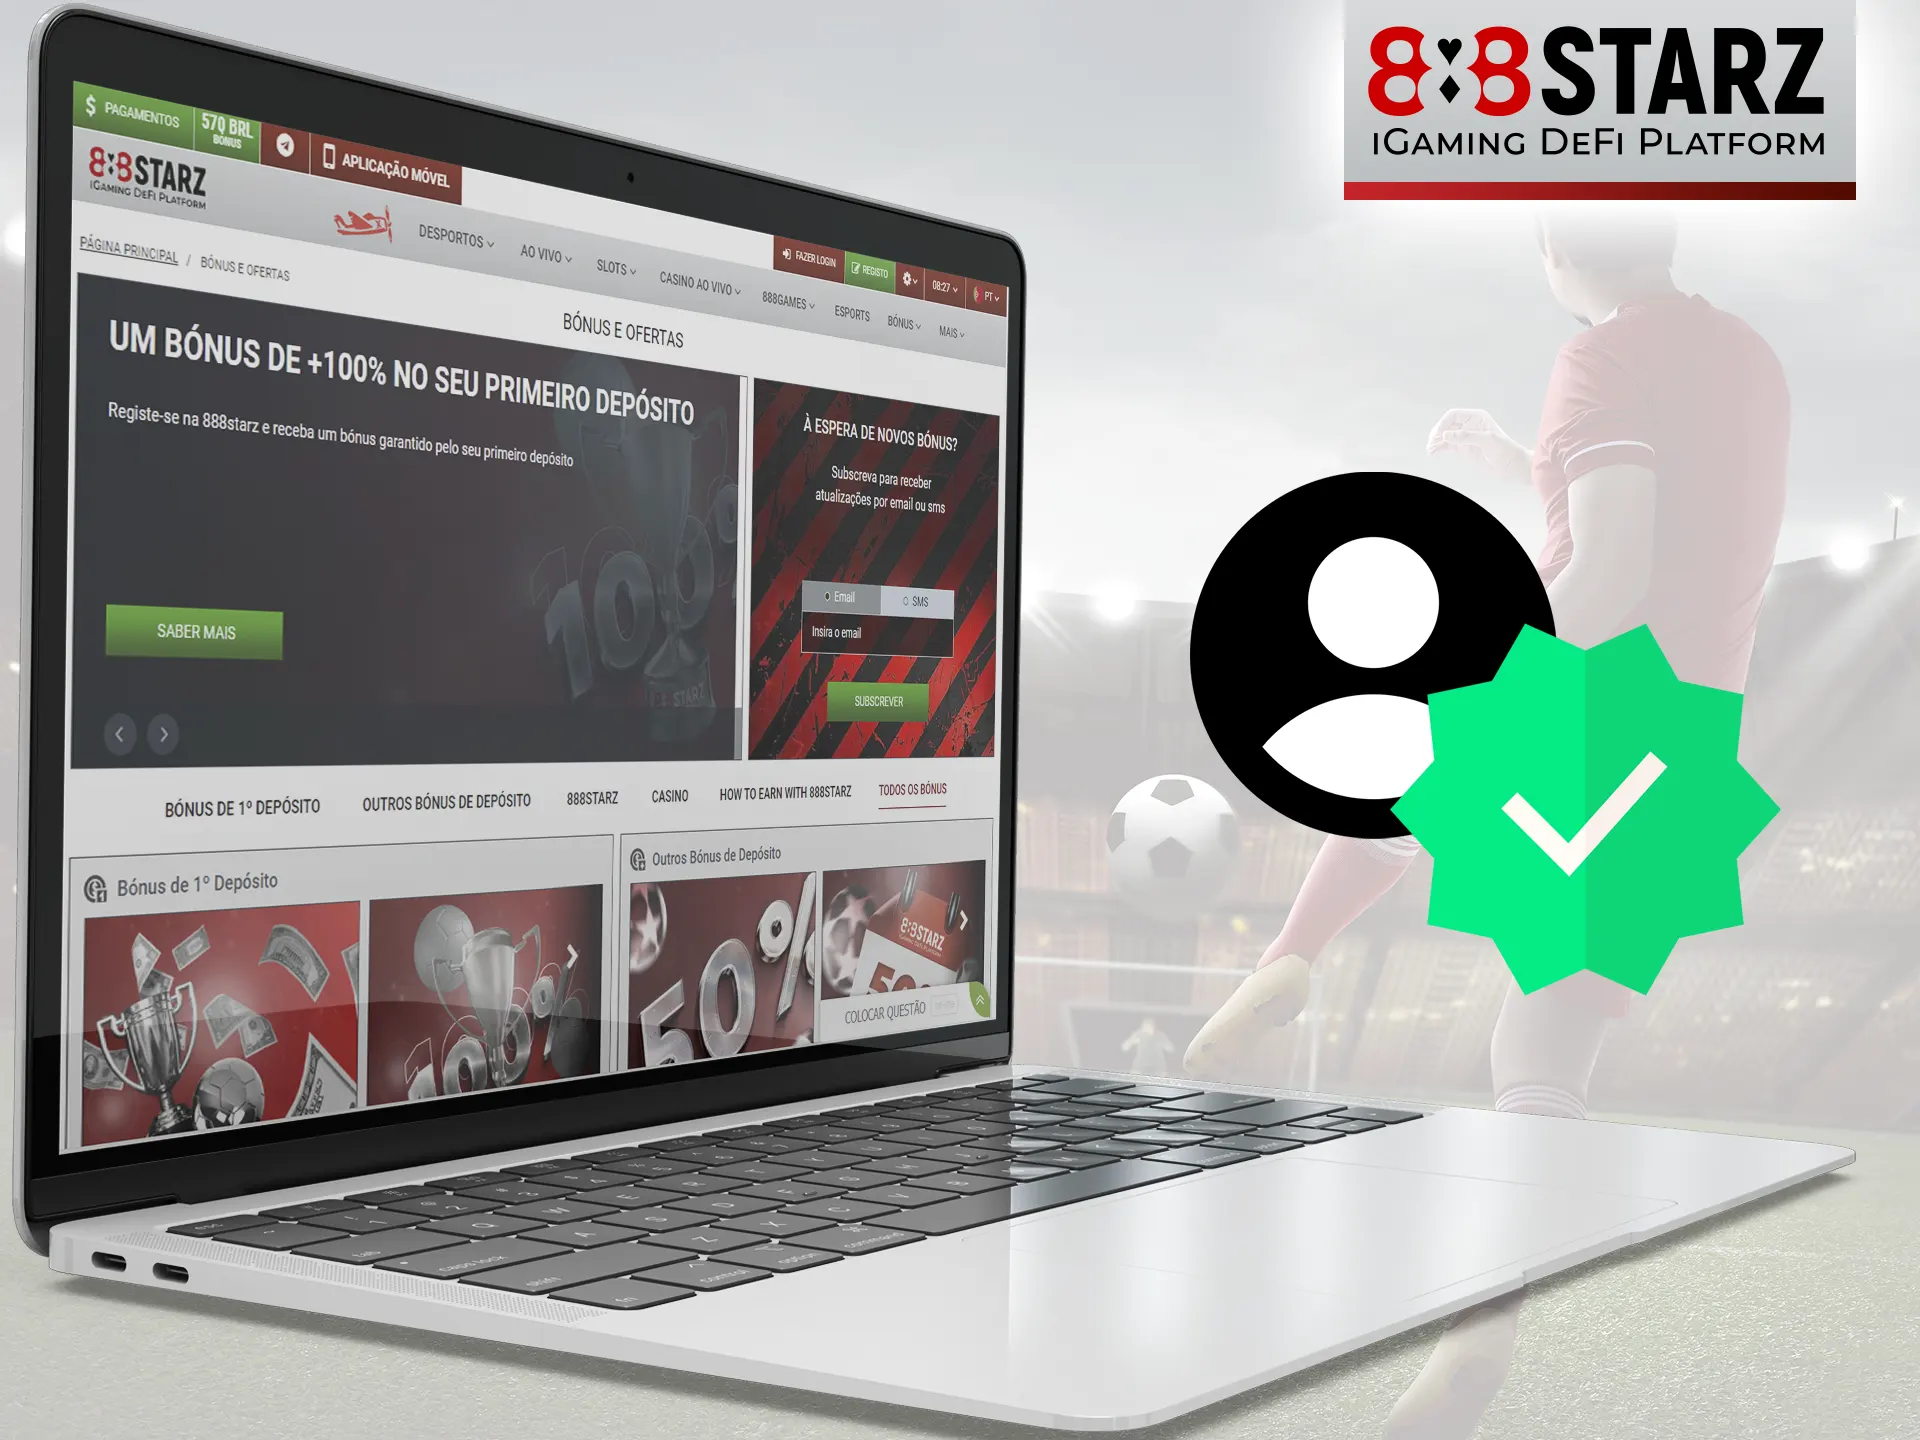 Verifique sua conta no 888Starz se quiser torná-la mais segura.